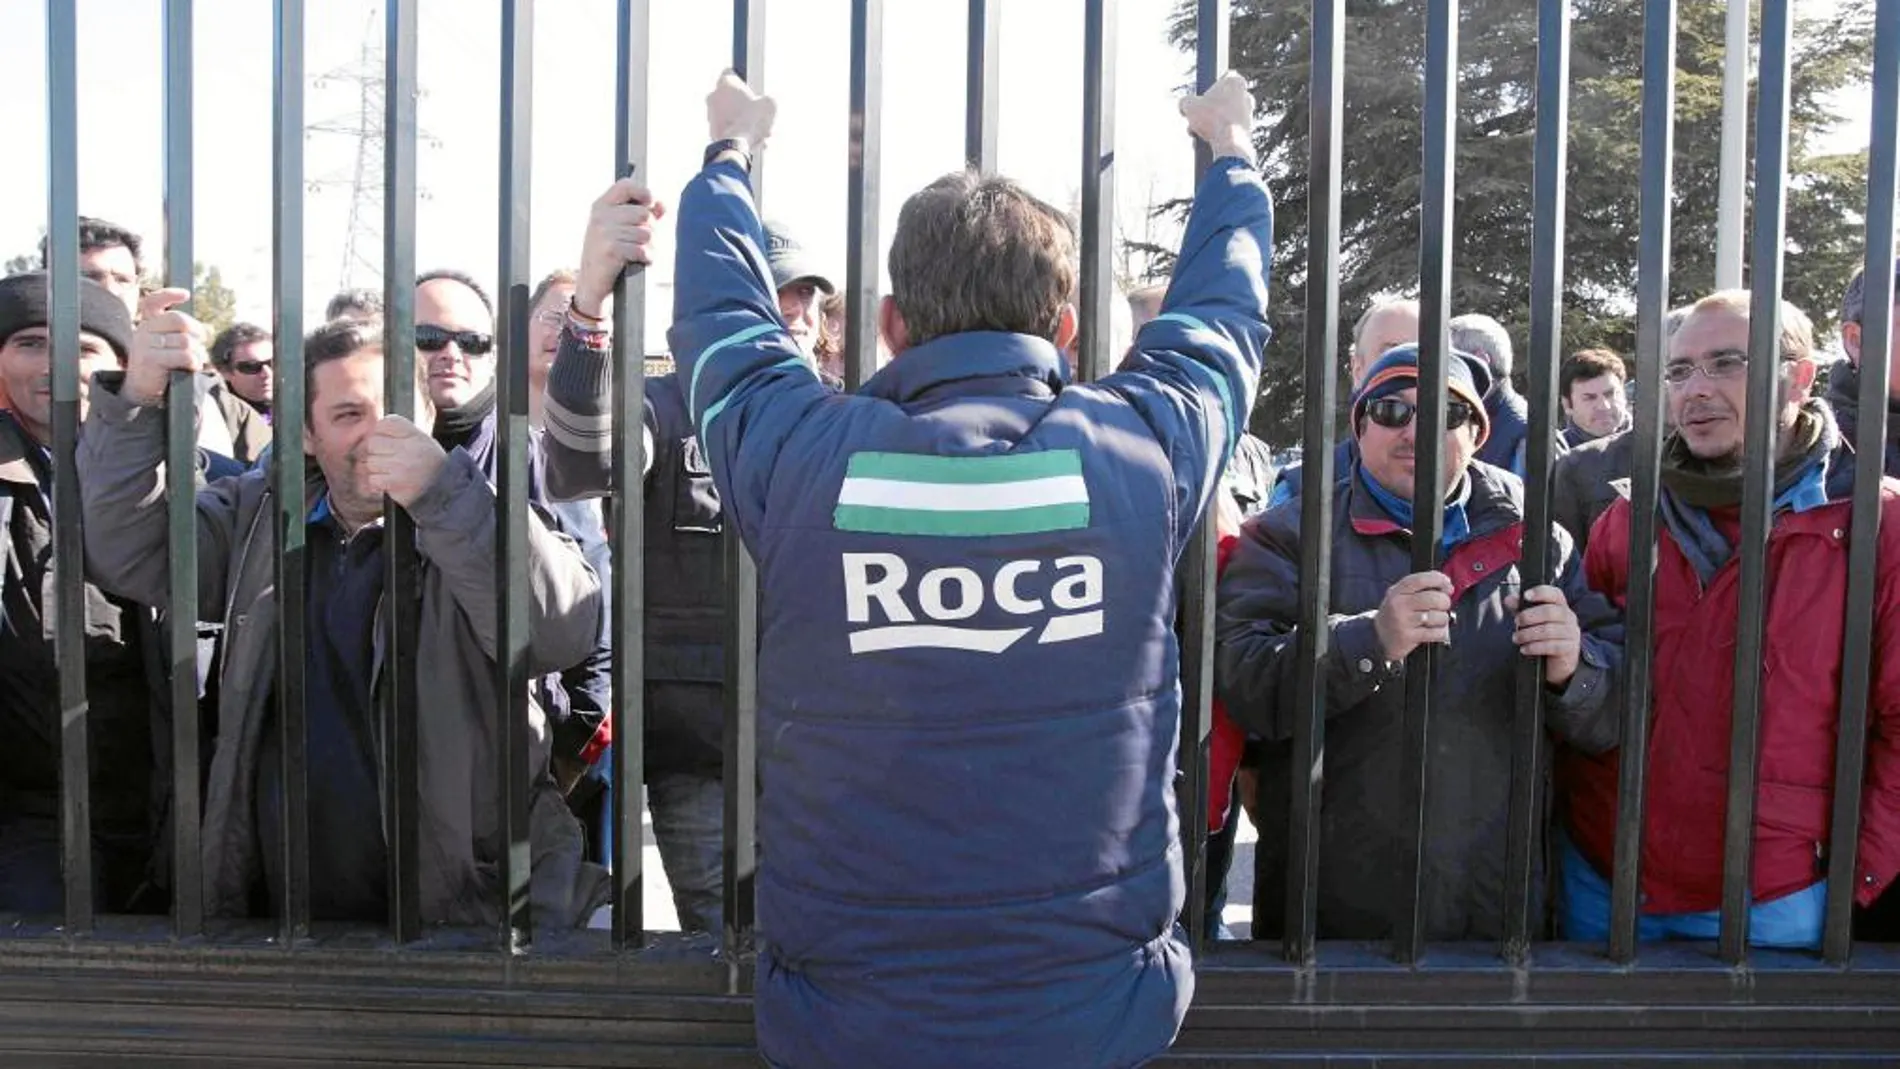 La plantilla de Roca en Alcalá de Guadaíra cuenta con 227 trabajadores